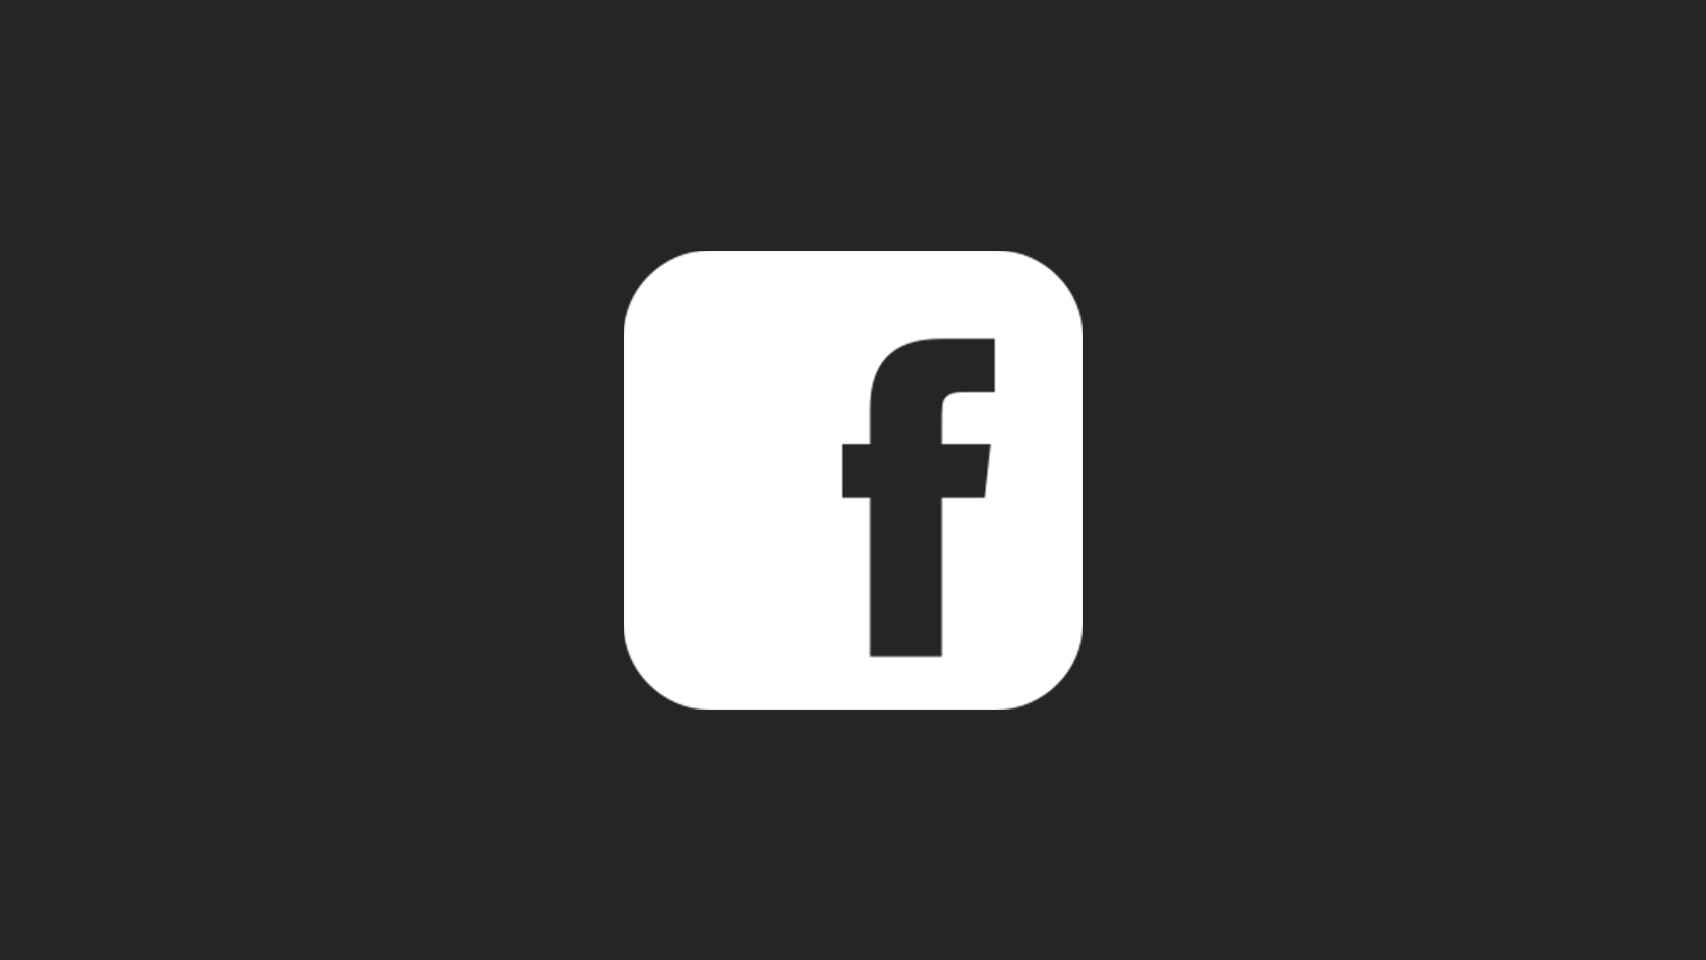 El logo de Facebook en modo oscuro.